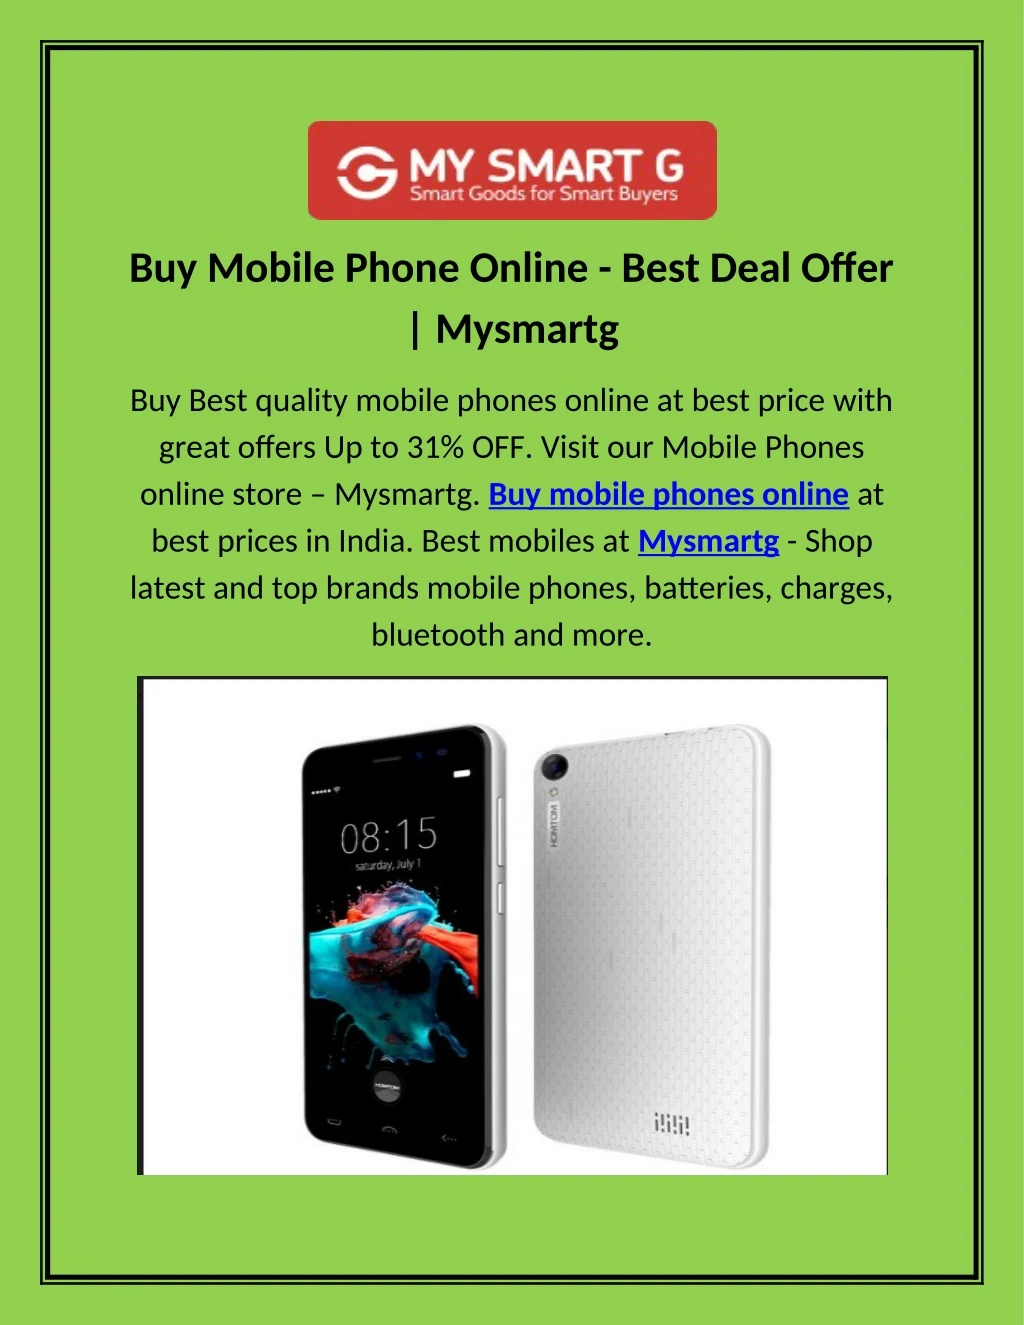 buy mobile phone online best deal offer mysmartg